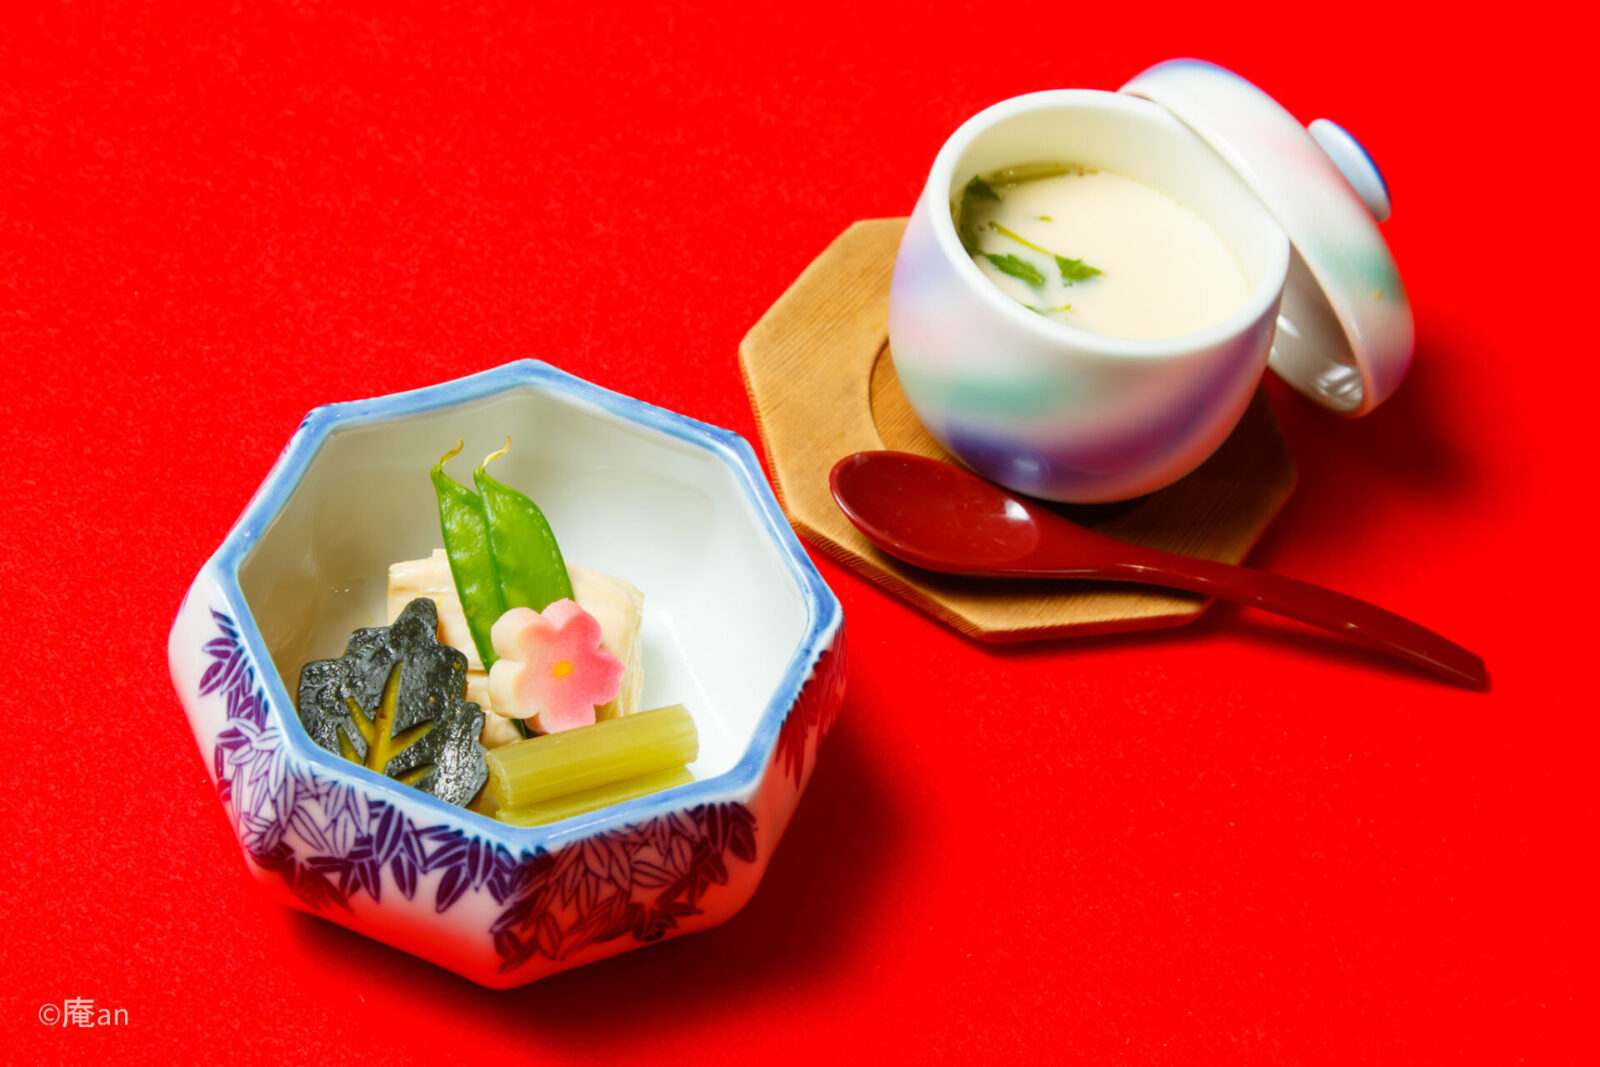 【京都の仕出し文化を体験】京都で味わう老舗仕出し割烹の会席盛り付け体験 画像2